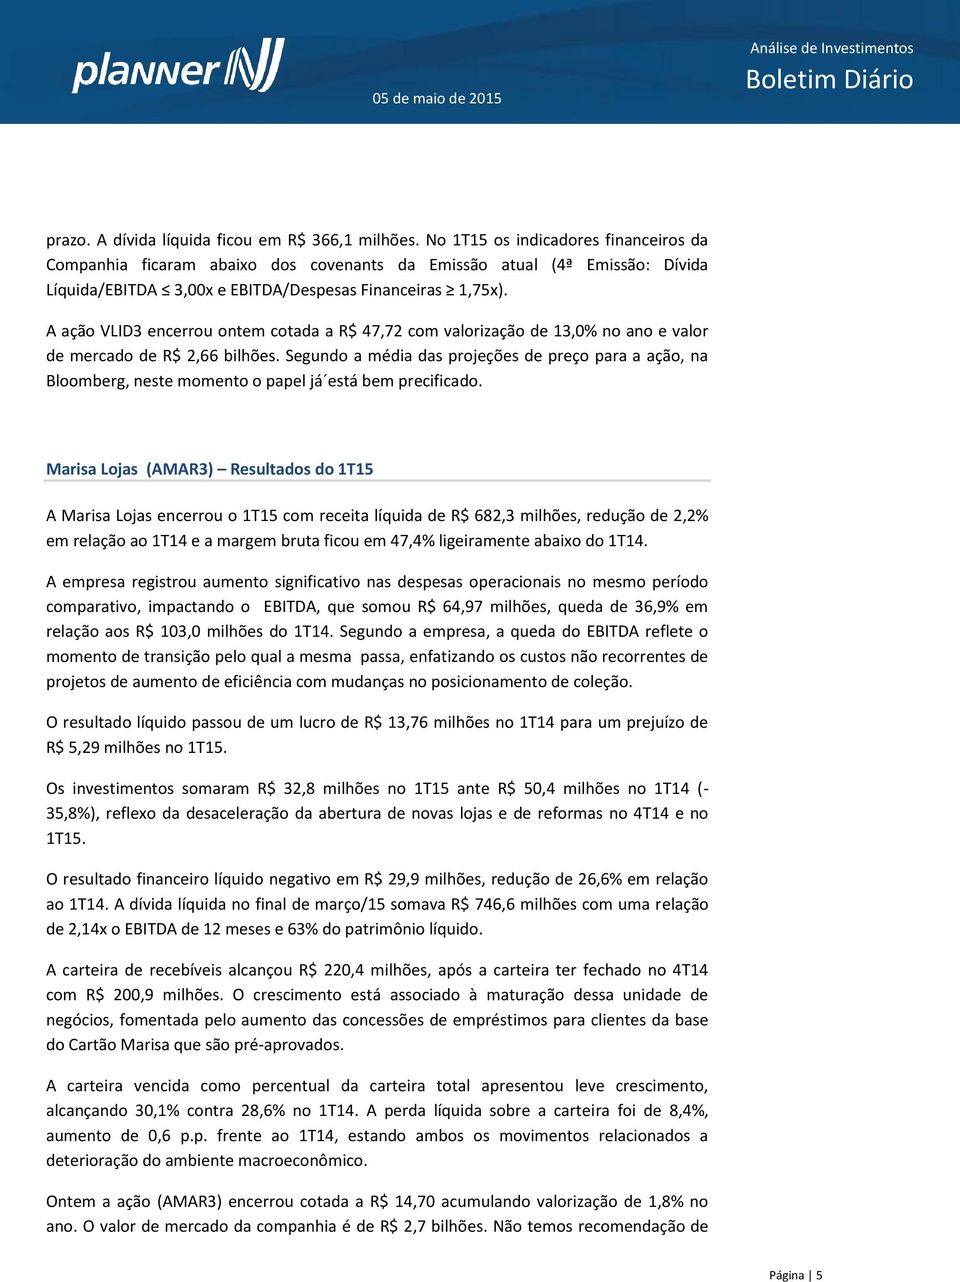 A ação VLID3 encerrou ontem cotada a R$ 47,72 com valorização de 13,0% no ano e valor de mercado de R$ 2,66 bilhões.